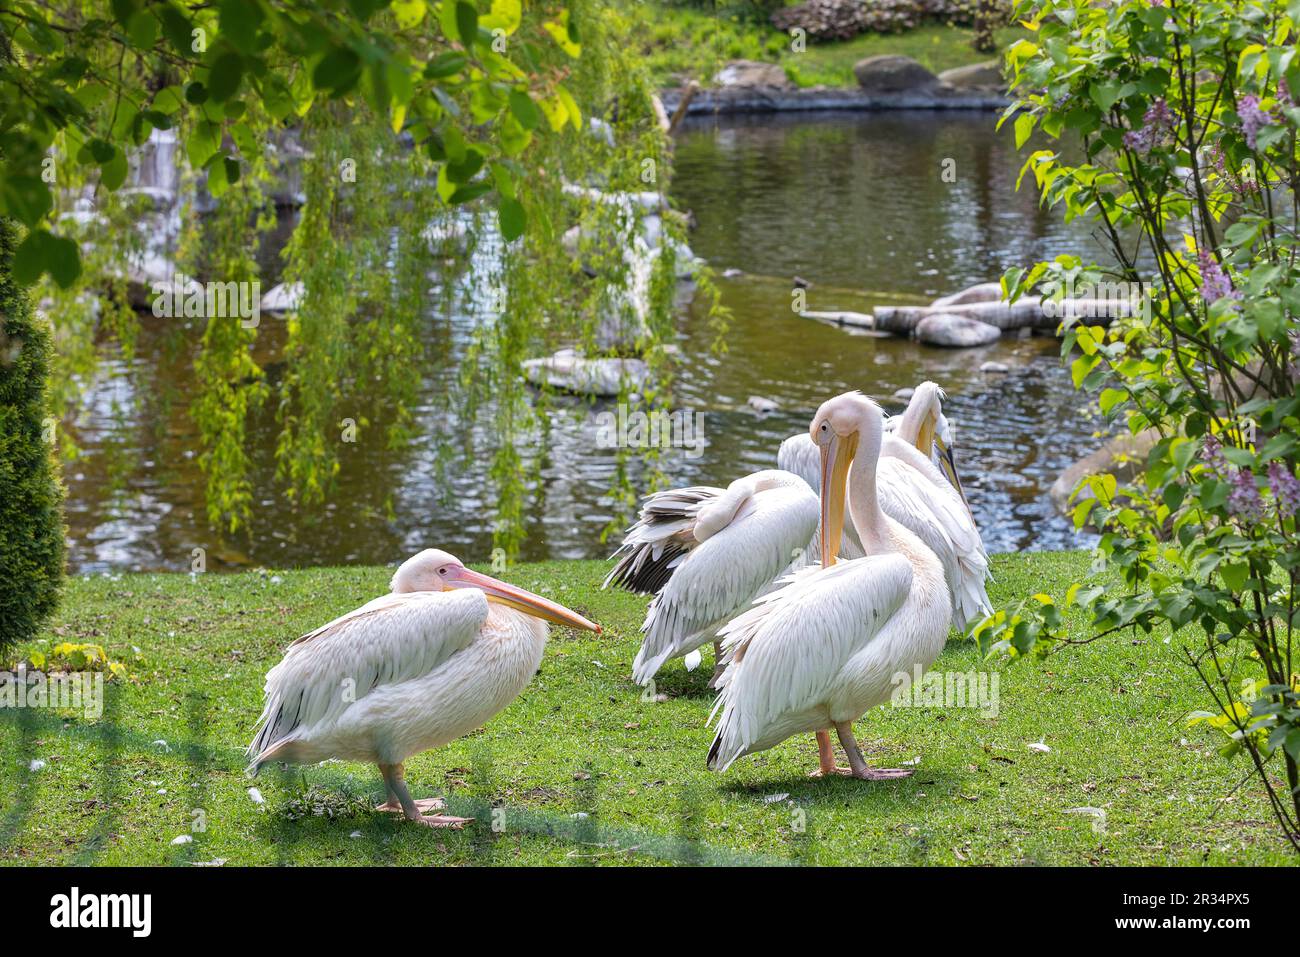 Eine Schar großer weißer Pelikane ruht am Ufer des Stadtteiches. Natur im Frühling. Stockfoto